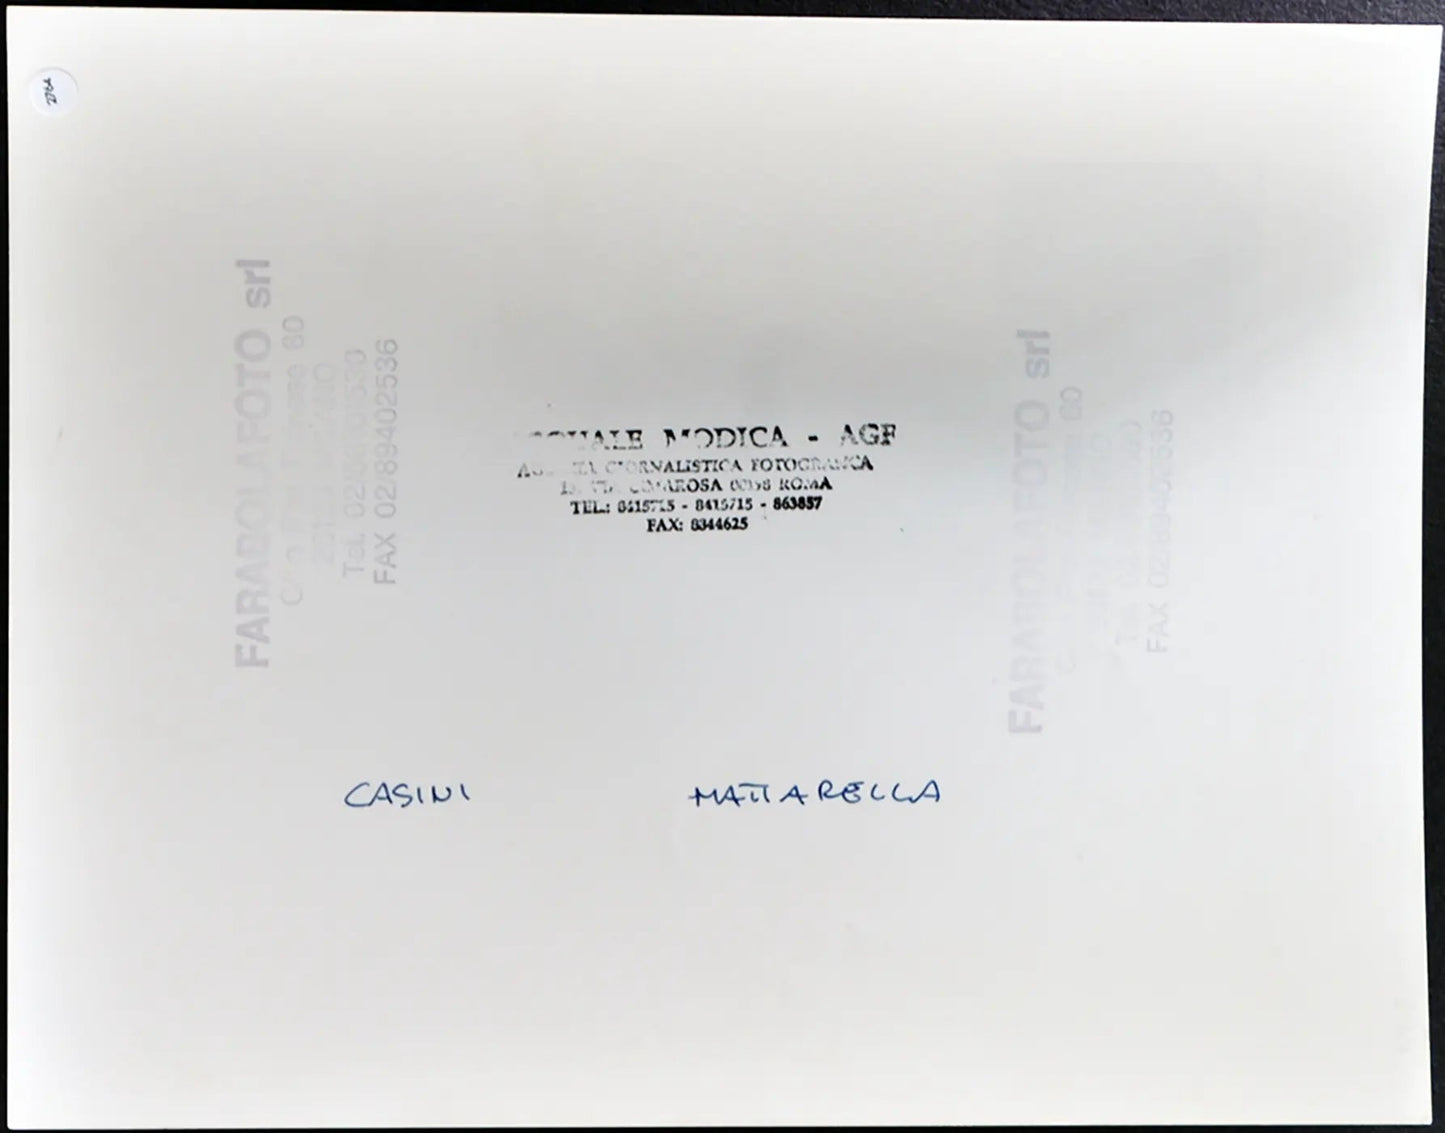 Casini e Mattarella anni 90 Ft 2764 - Stampa 24x30 cm - Farabola Stampa ai sali d'argento